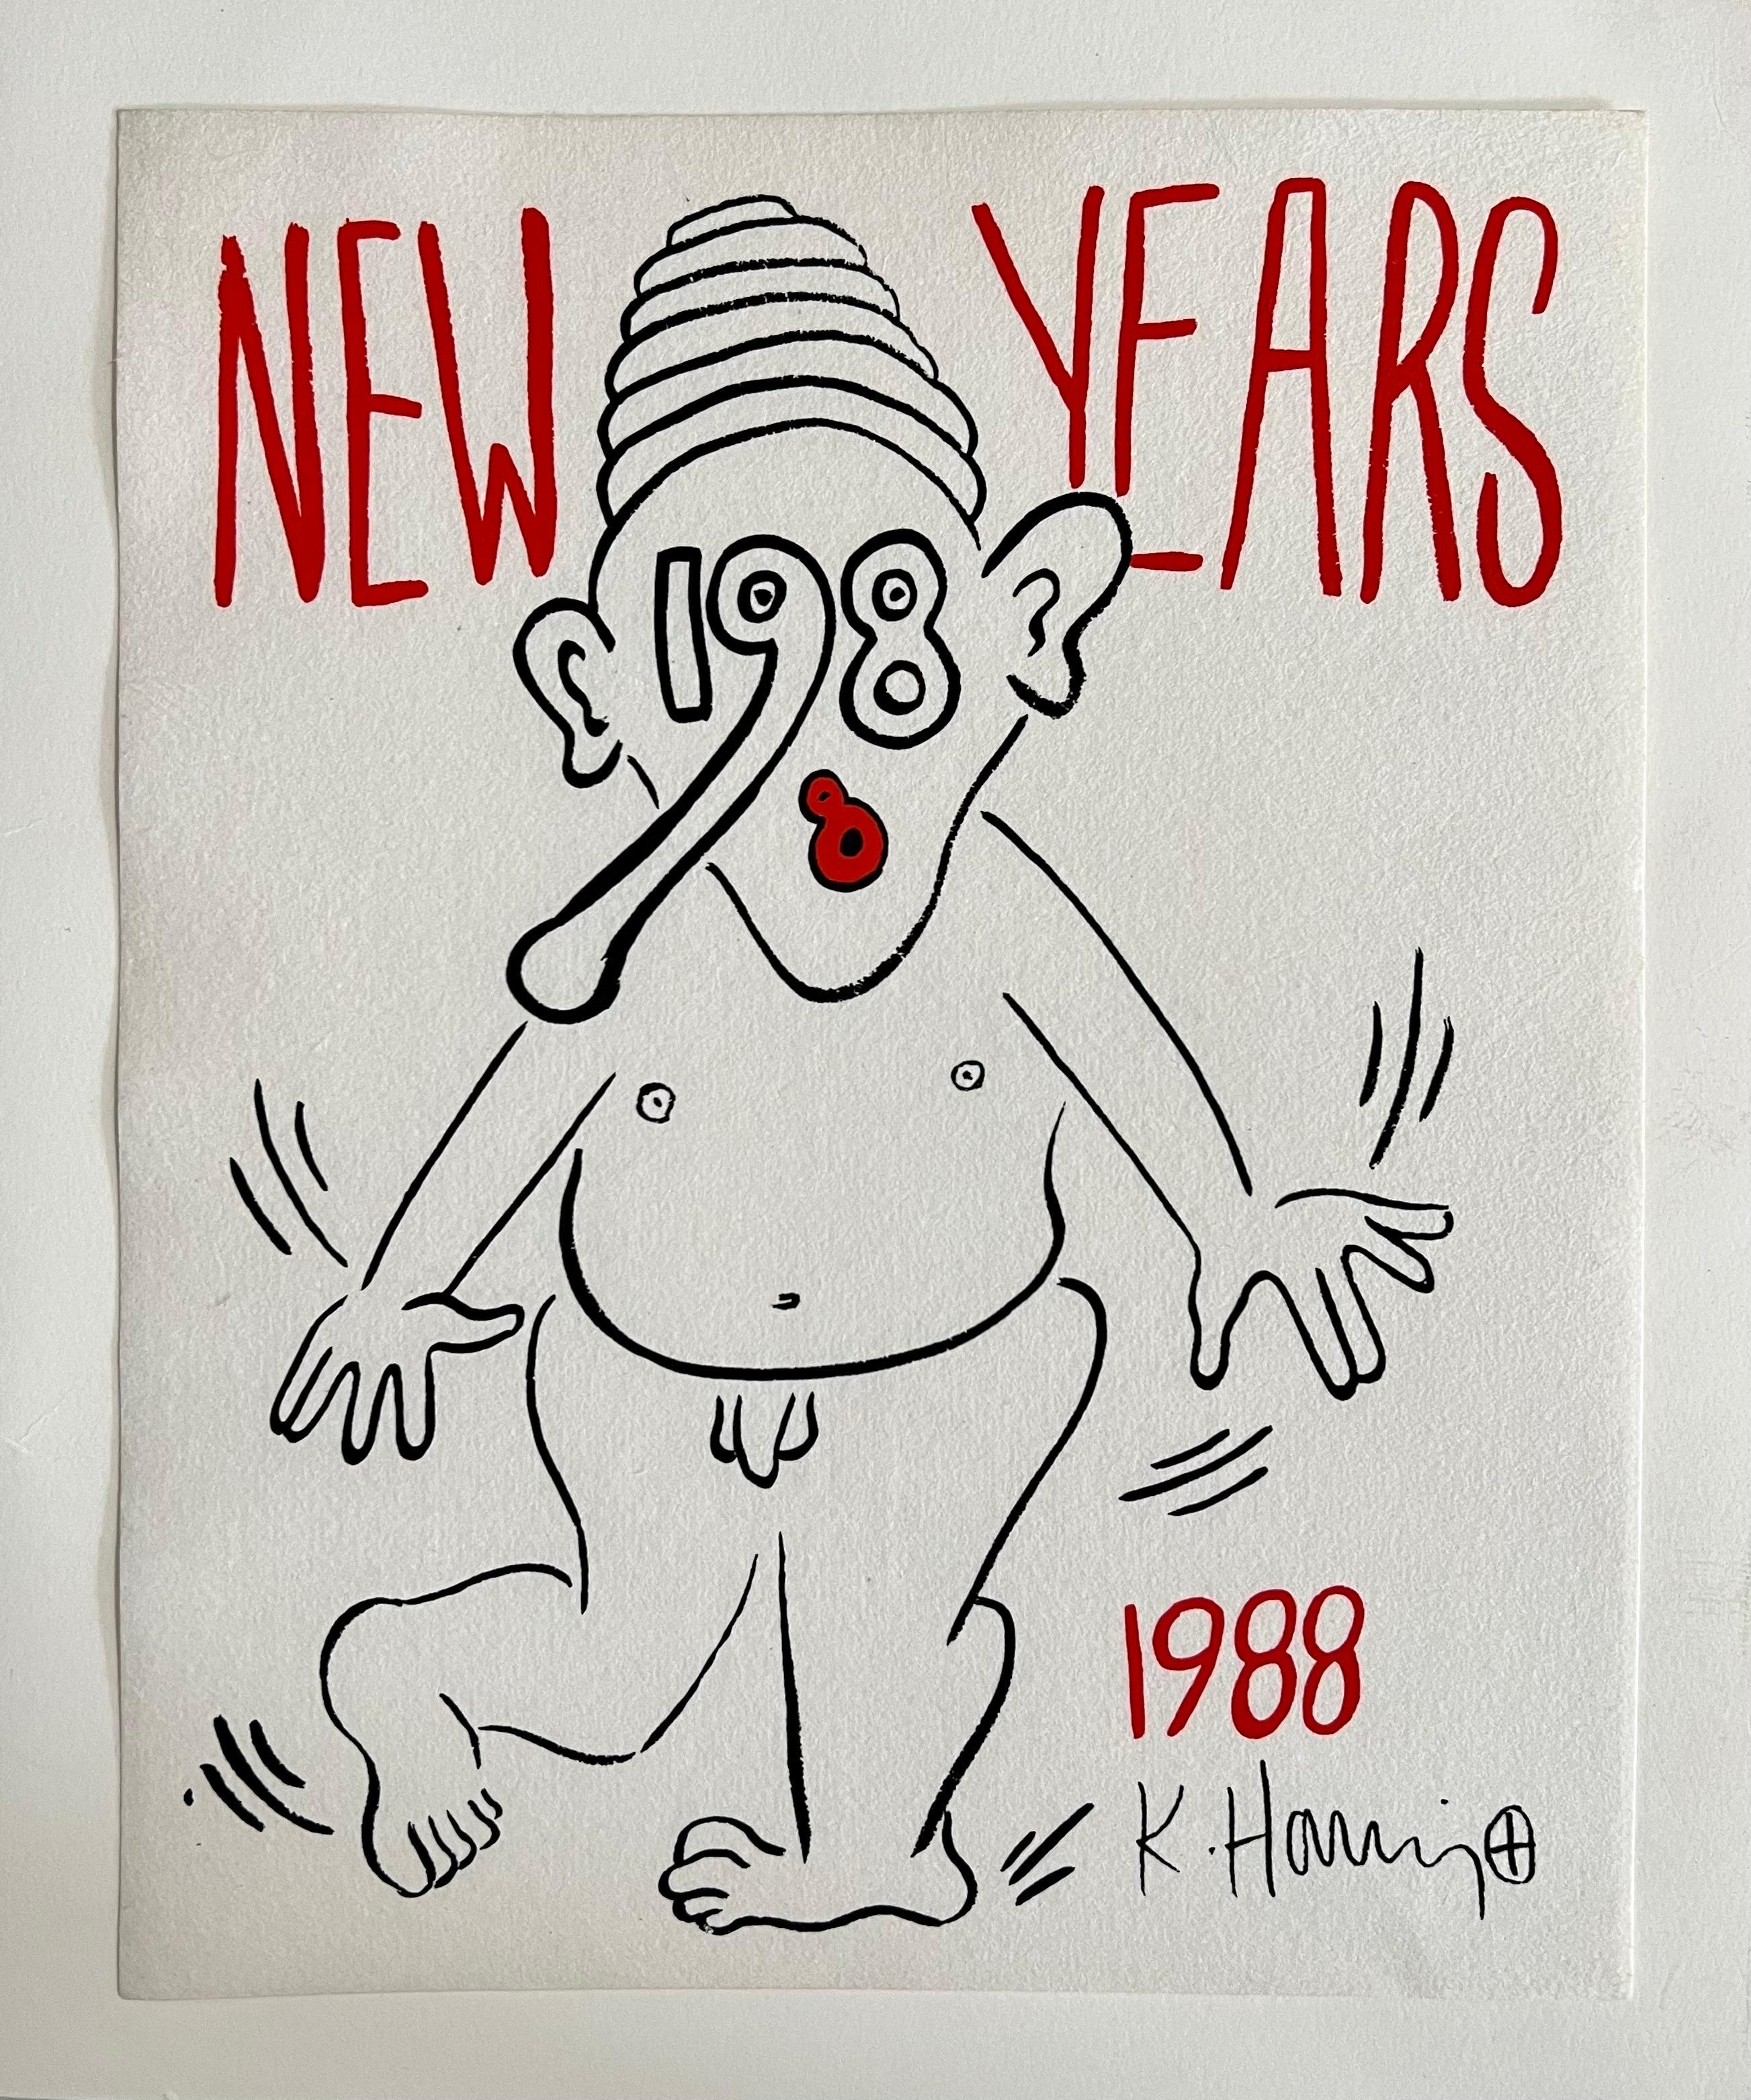 Artiste :  Keith Haring, Américain (1958 - 1990)
Titre :  Invitation au Nouvel An 1988
Année :  1988
Moyen :  Sérigraphie sur papier
Taille de l'image :  11 x 8 pouces 
Il porte une signature imprimée. Il n'est pas signé à la main comme il l'a été.
